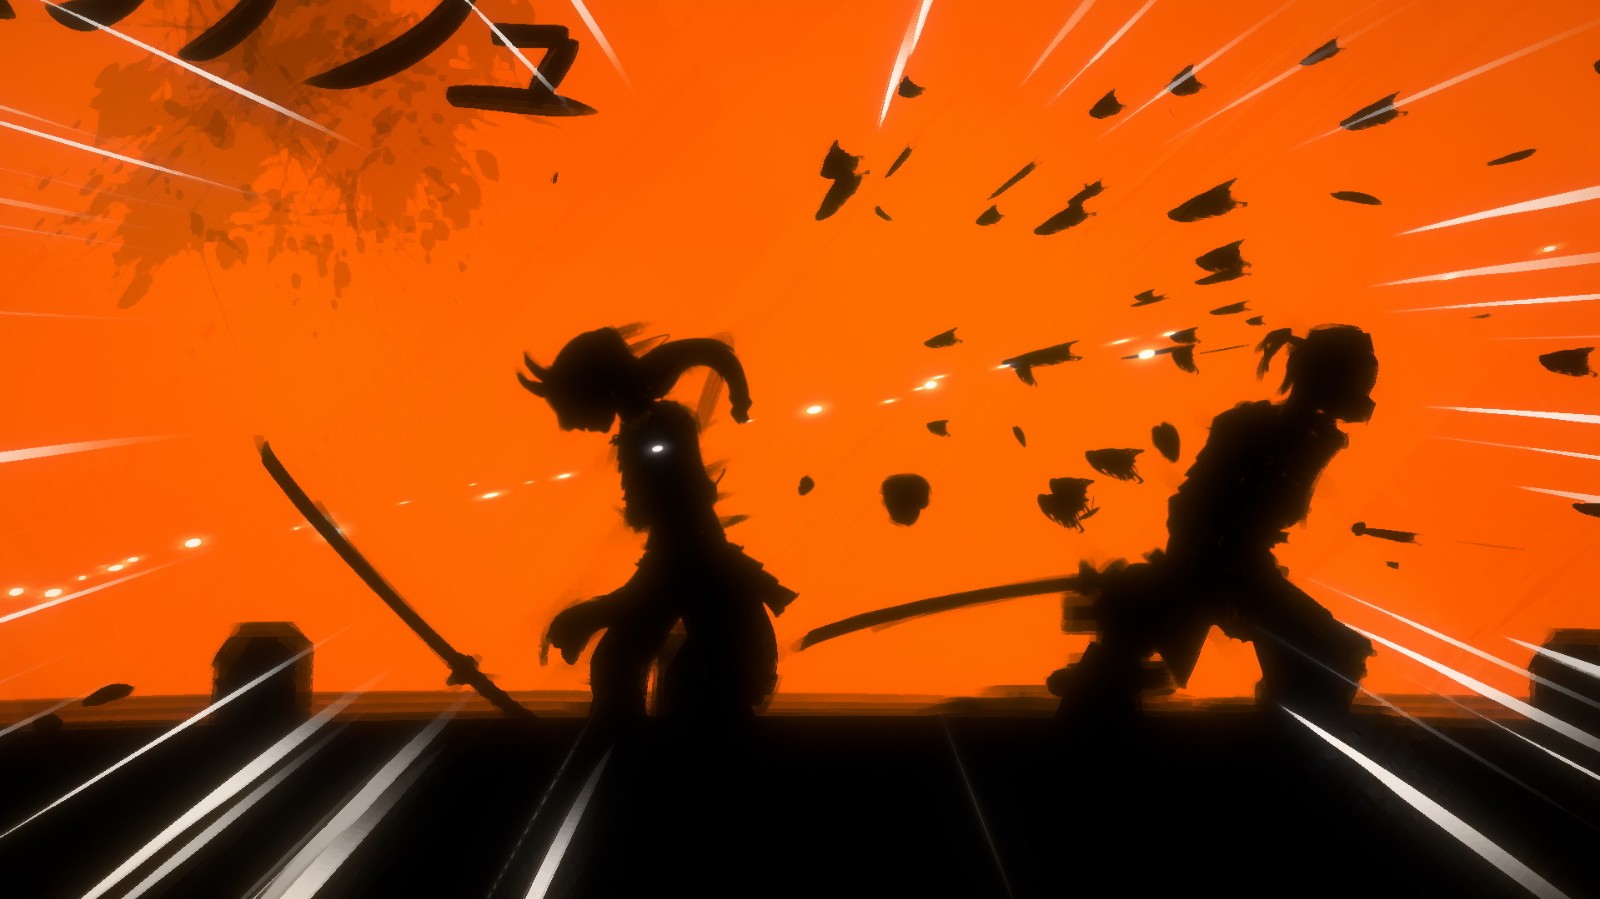 日式刀剑对战新游《Sclash》上架steam 演绎一击必杀美学 二次世界 第6张